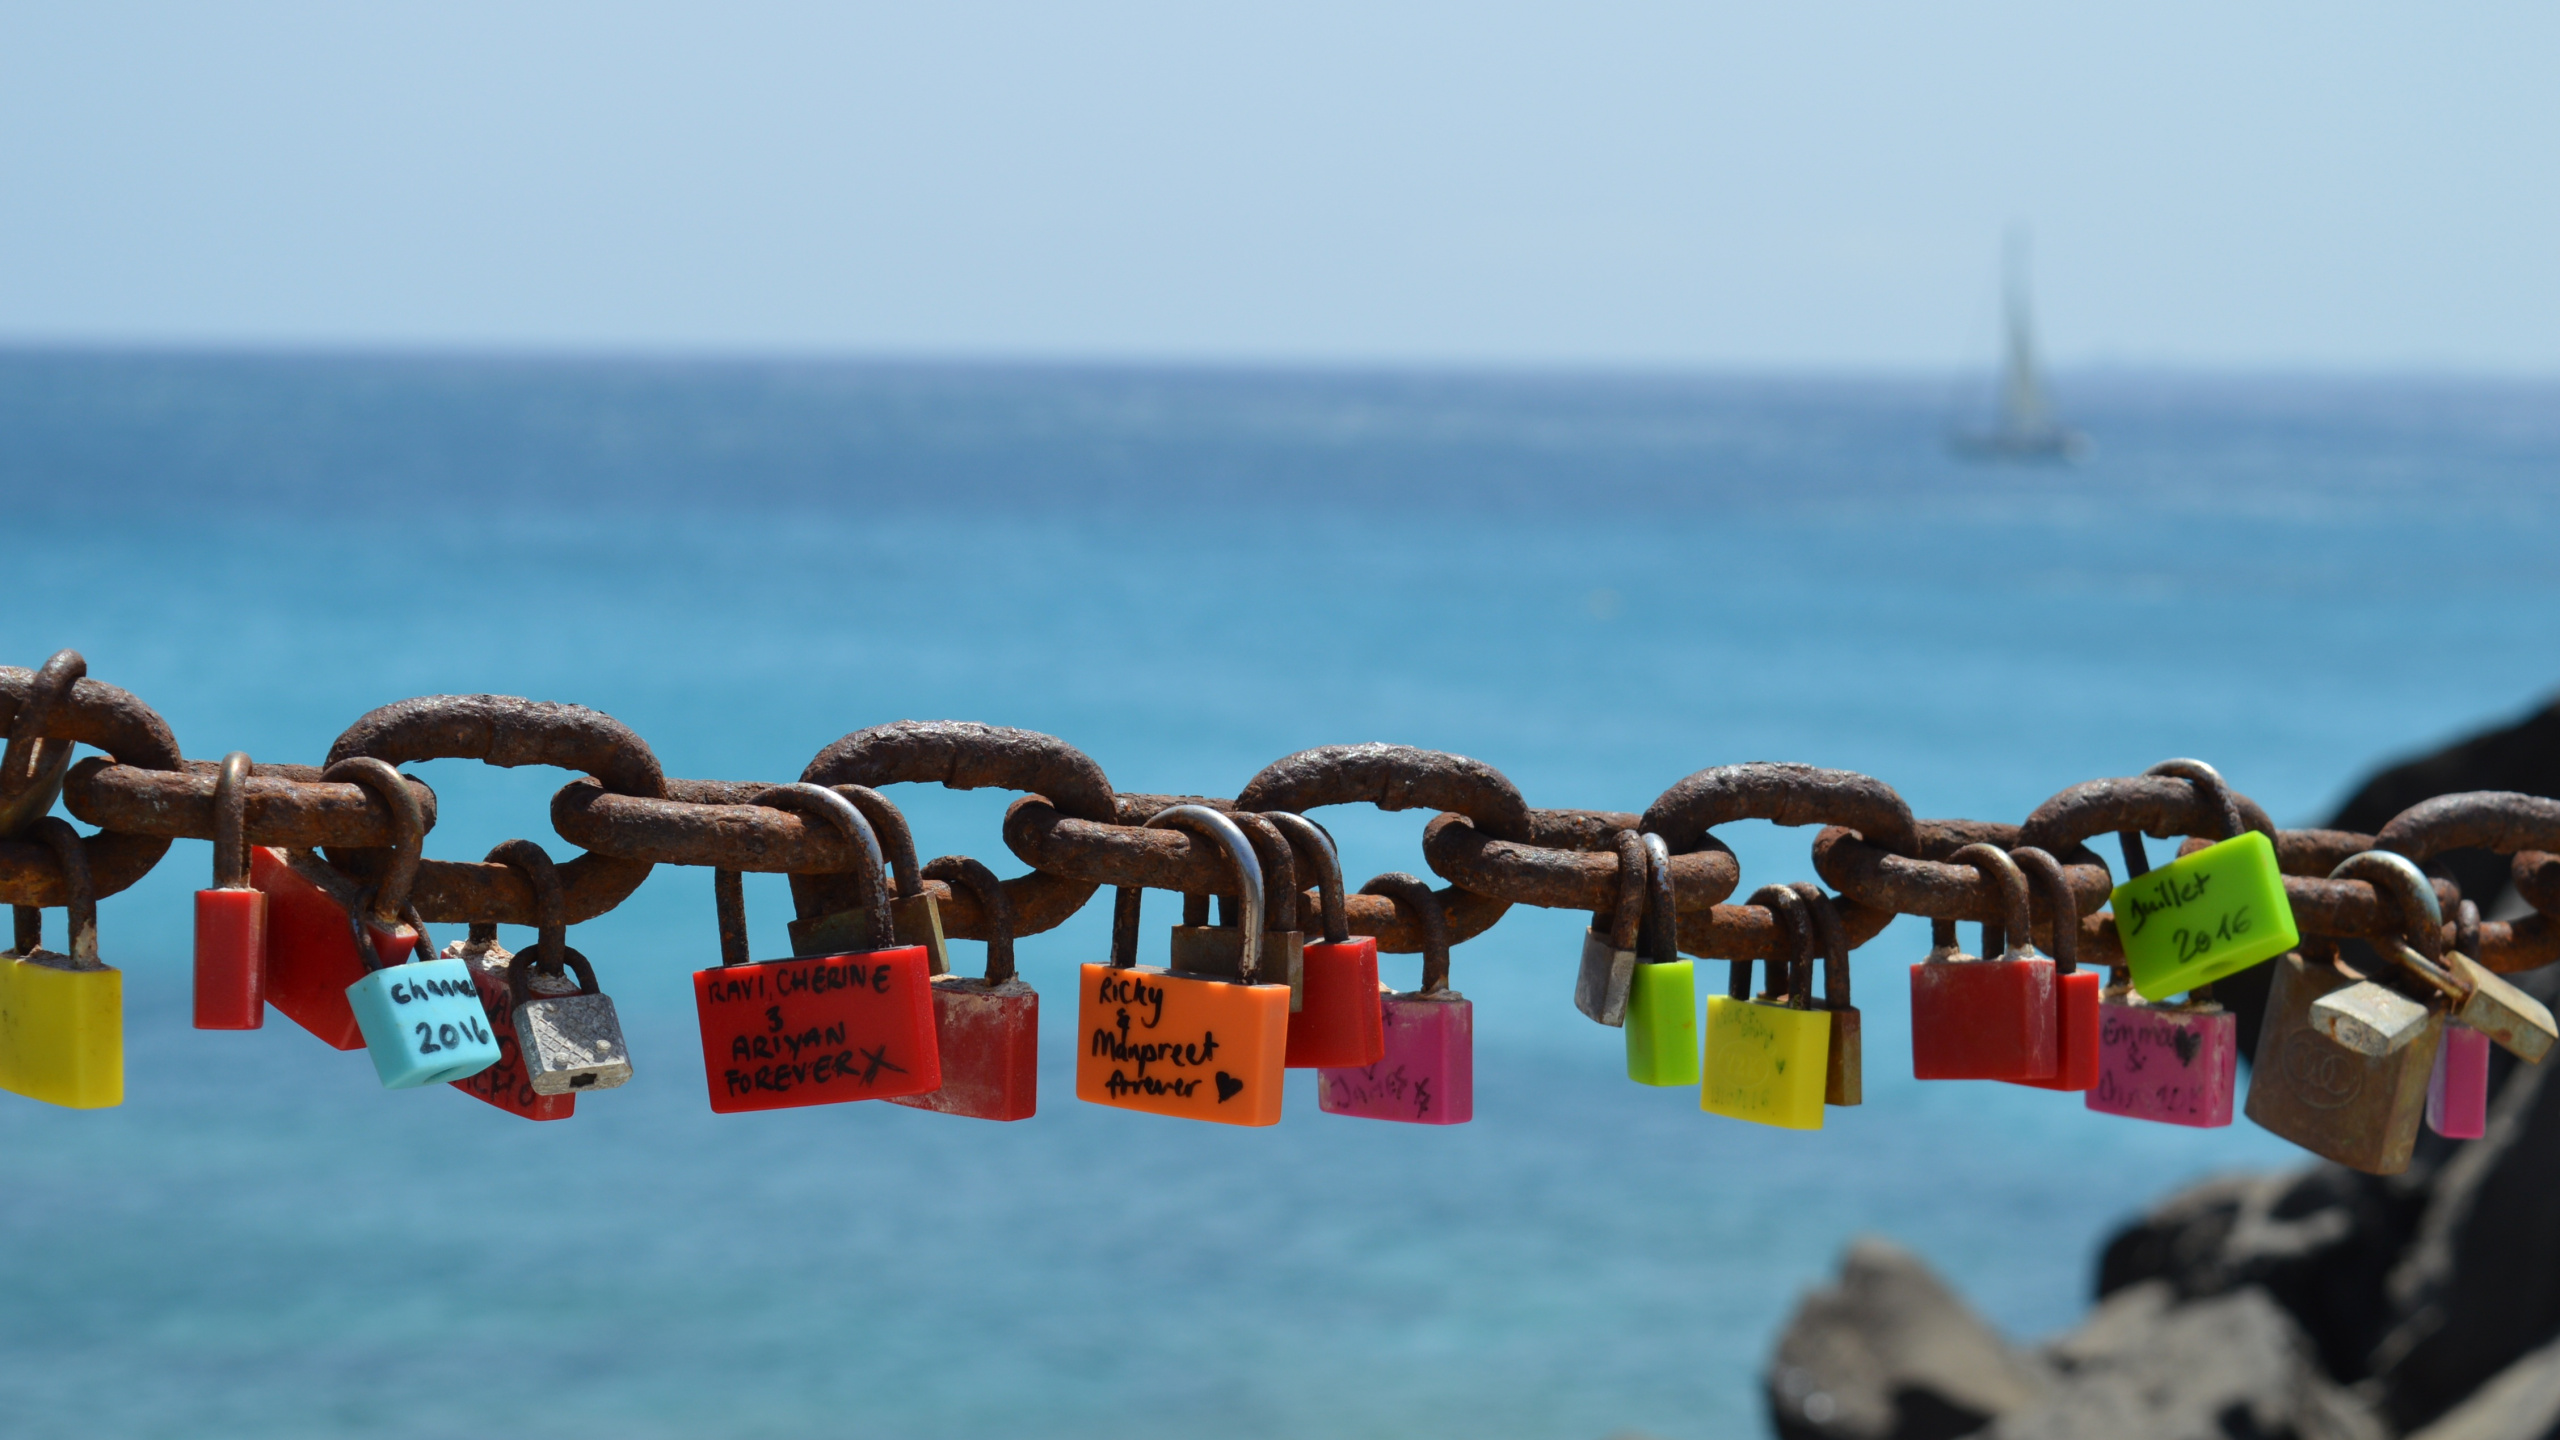 挂锁, 锁定, 锁和钥匙, 大海, 海洋 壁纸 2560x1440 允许